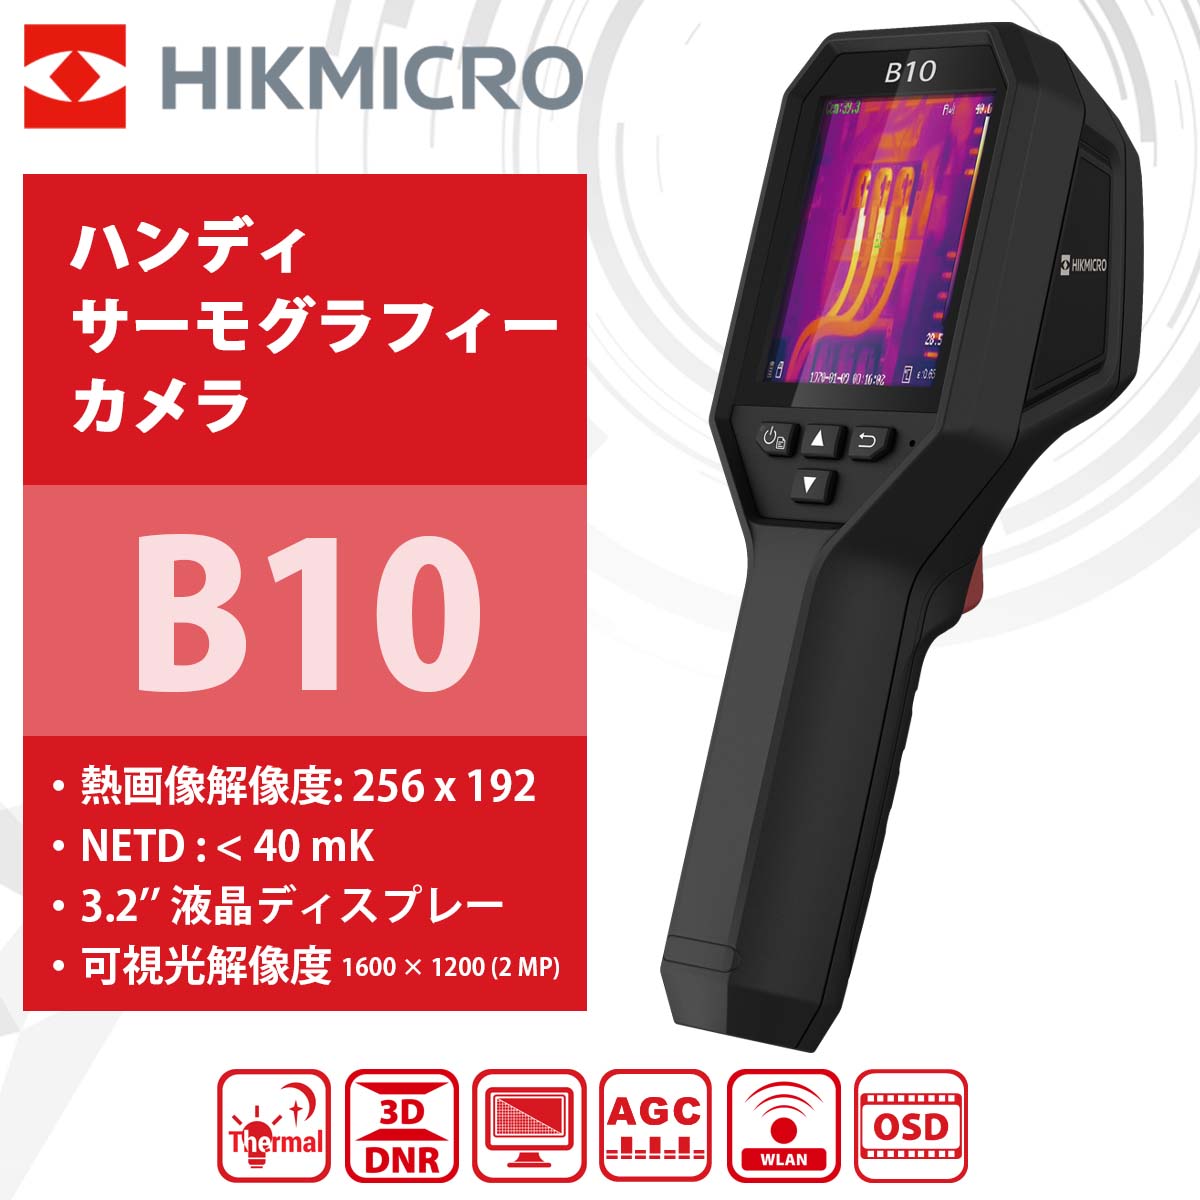 HIKMICROハンディサーモグラフィーカメラ B10 温度測定 フレームレート